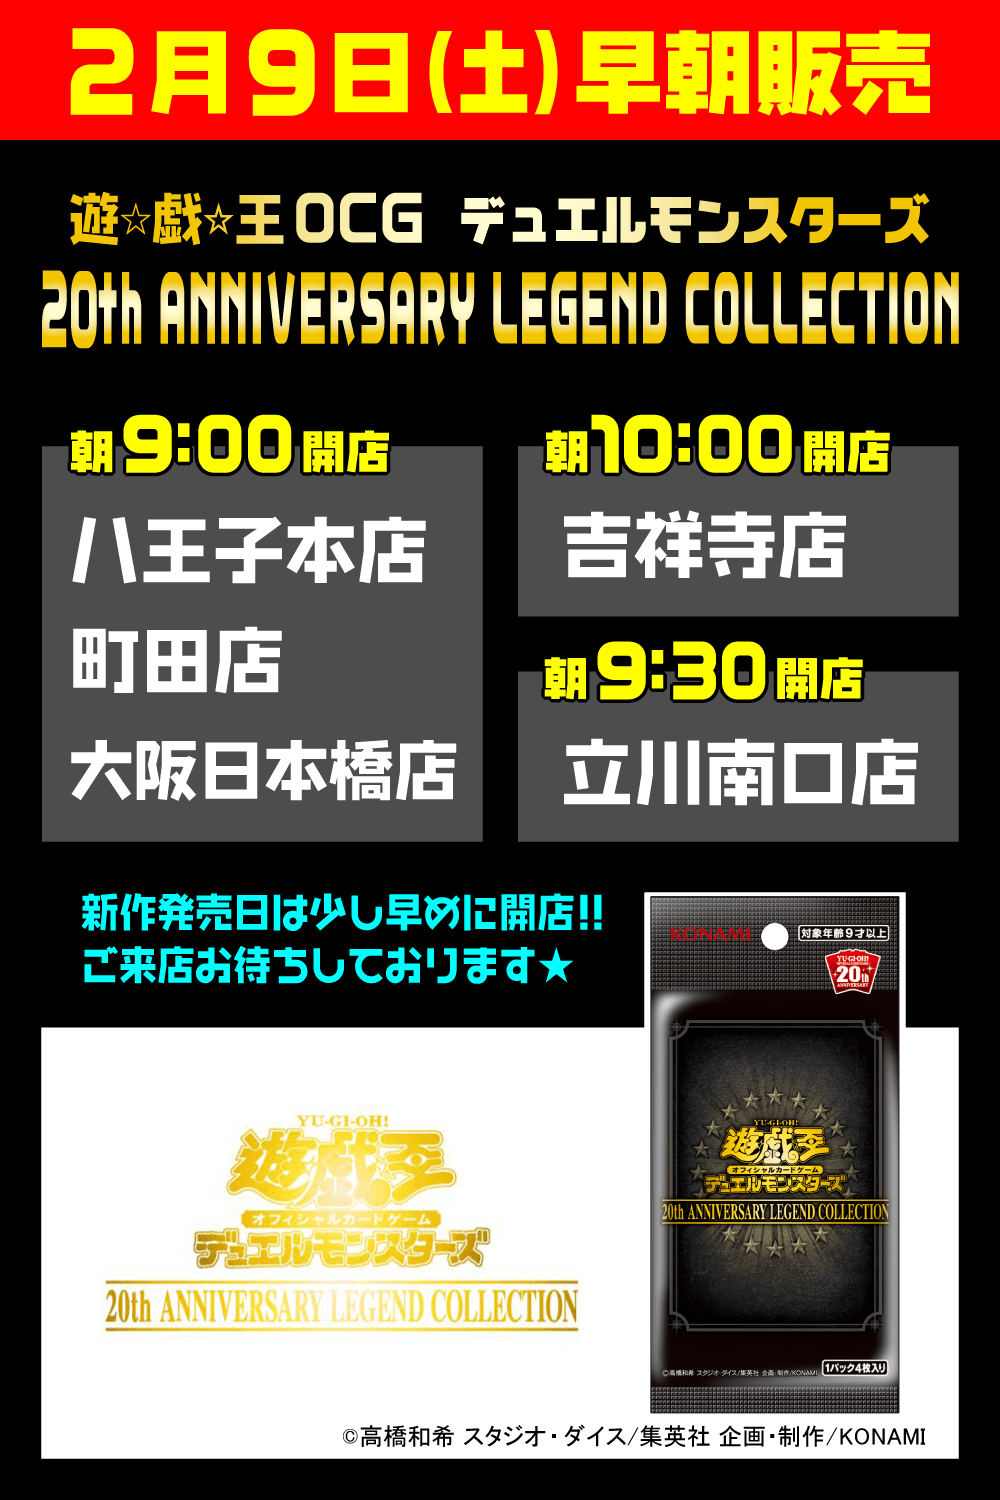 遊戯王OCG「20th ANNIVERSARY LEGEND COLLECTION」早朝販売